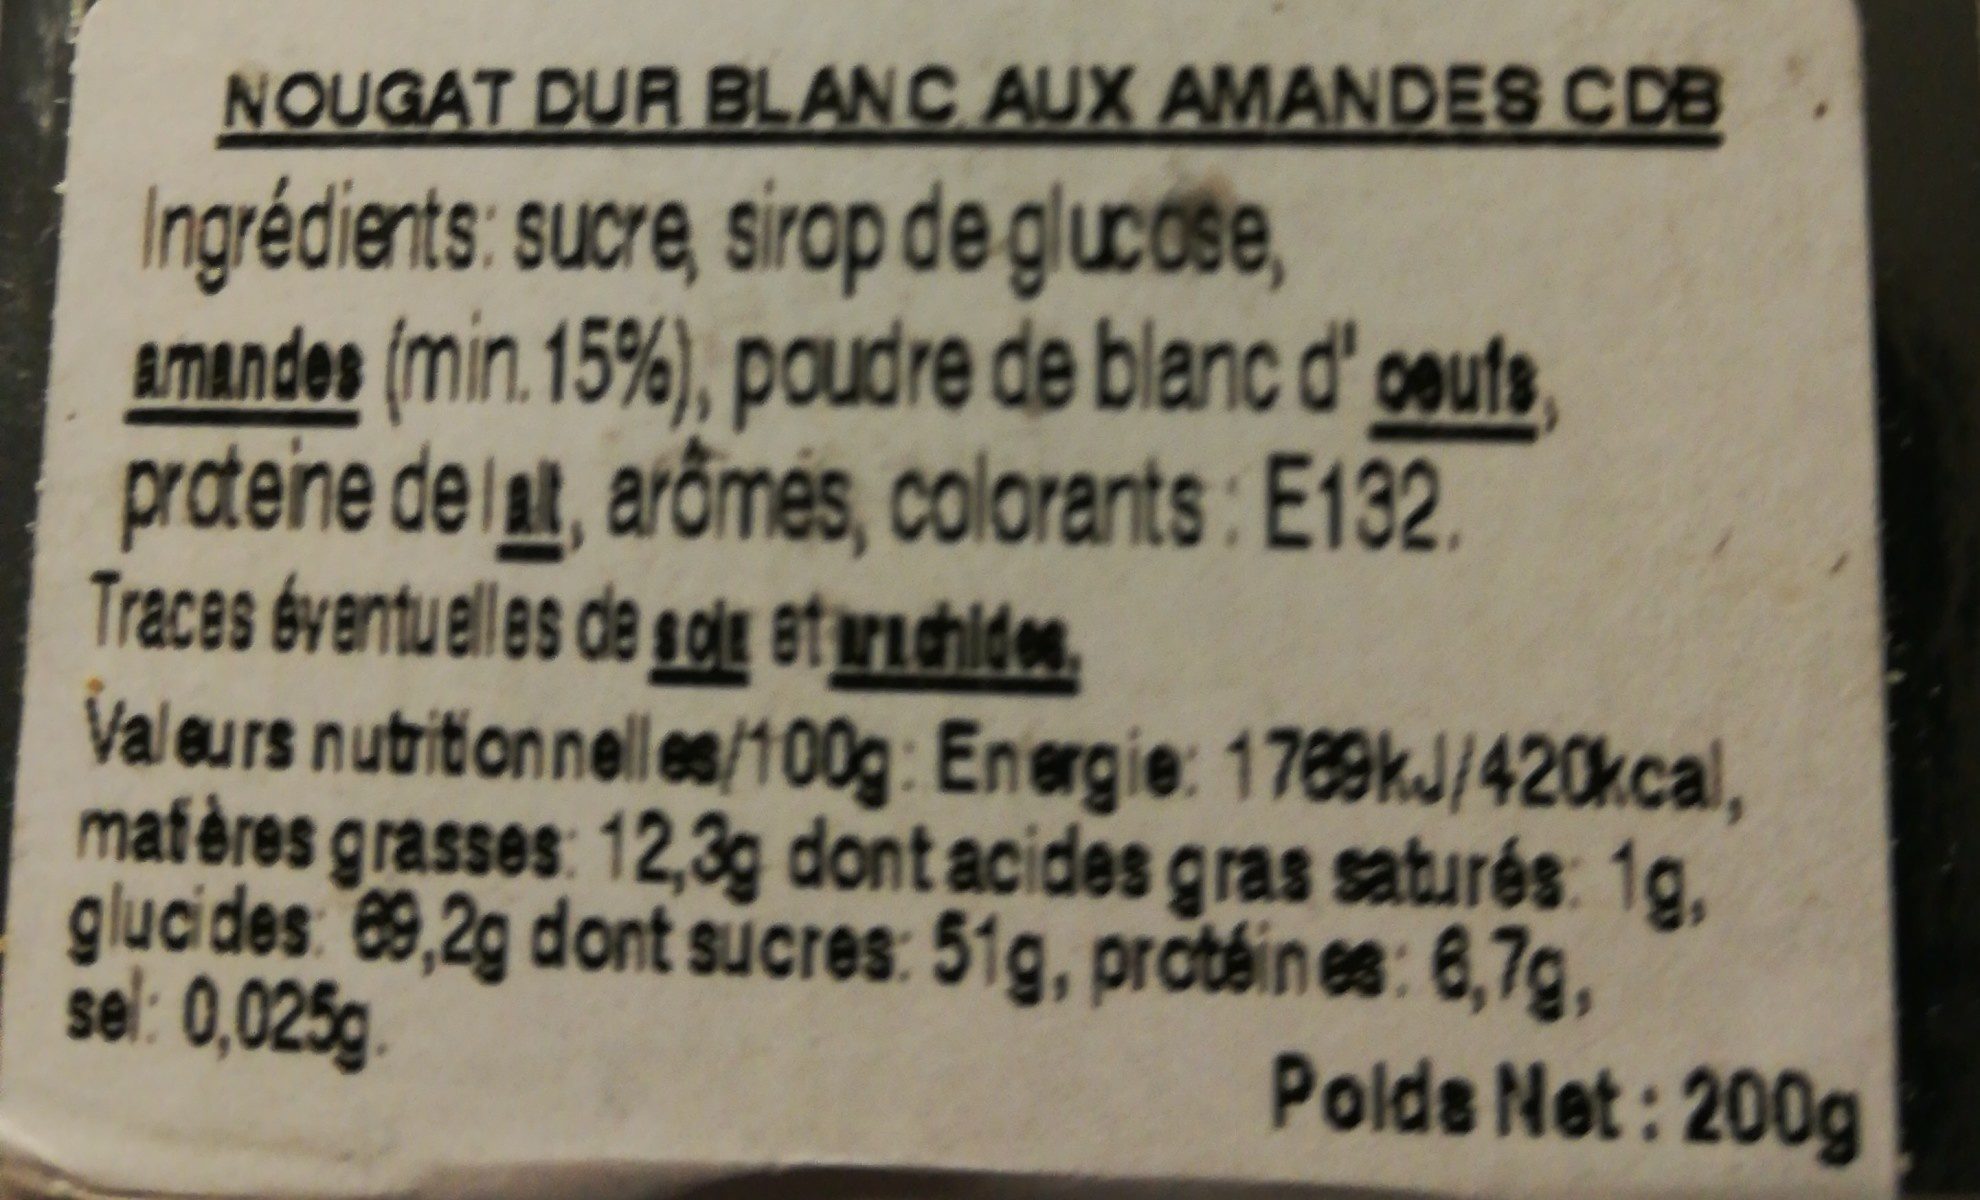 Nougat dur blanc baux amandes - Ingrédients